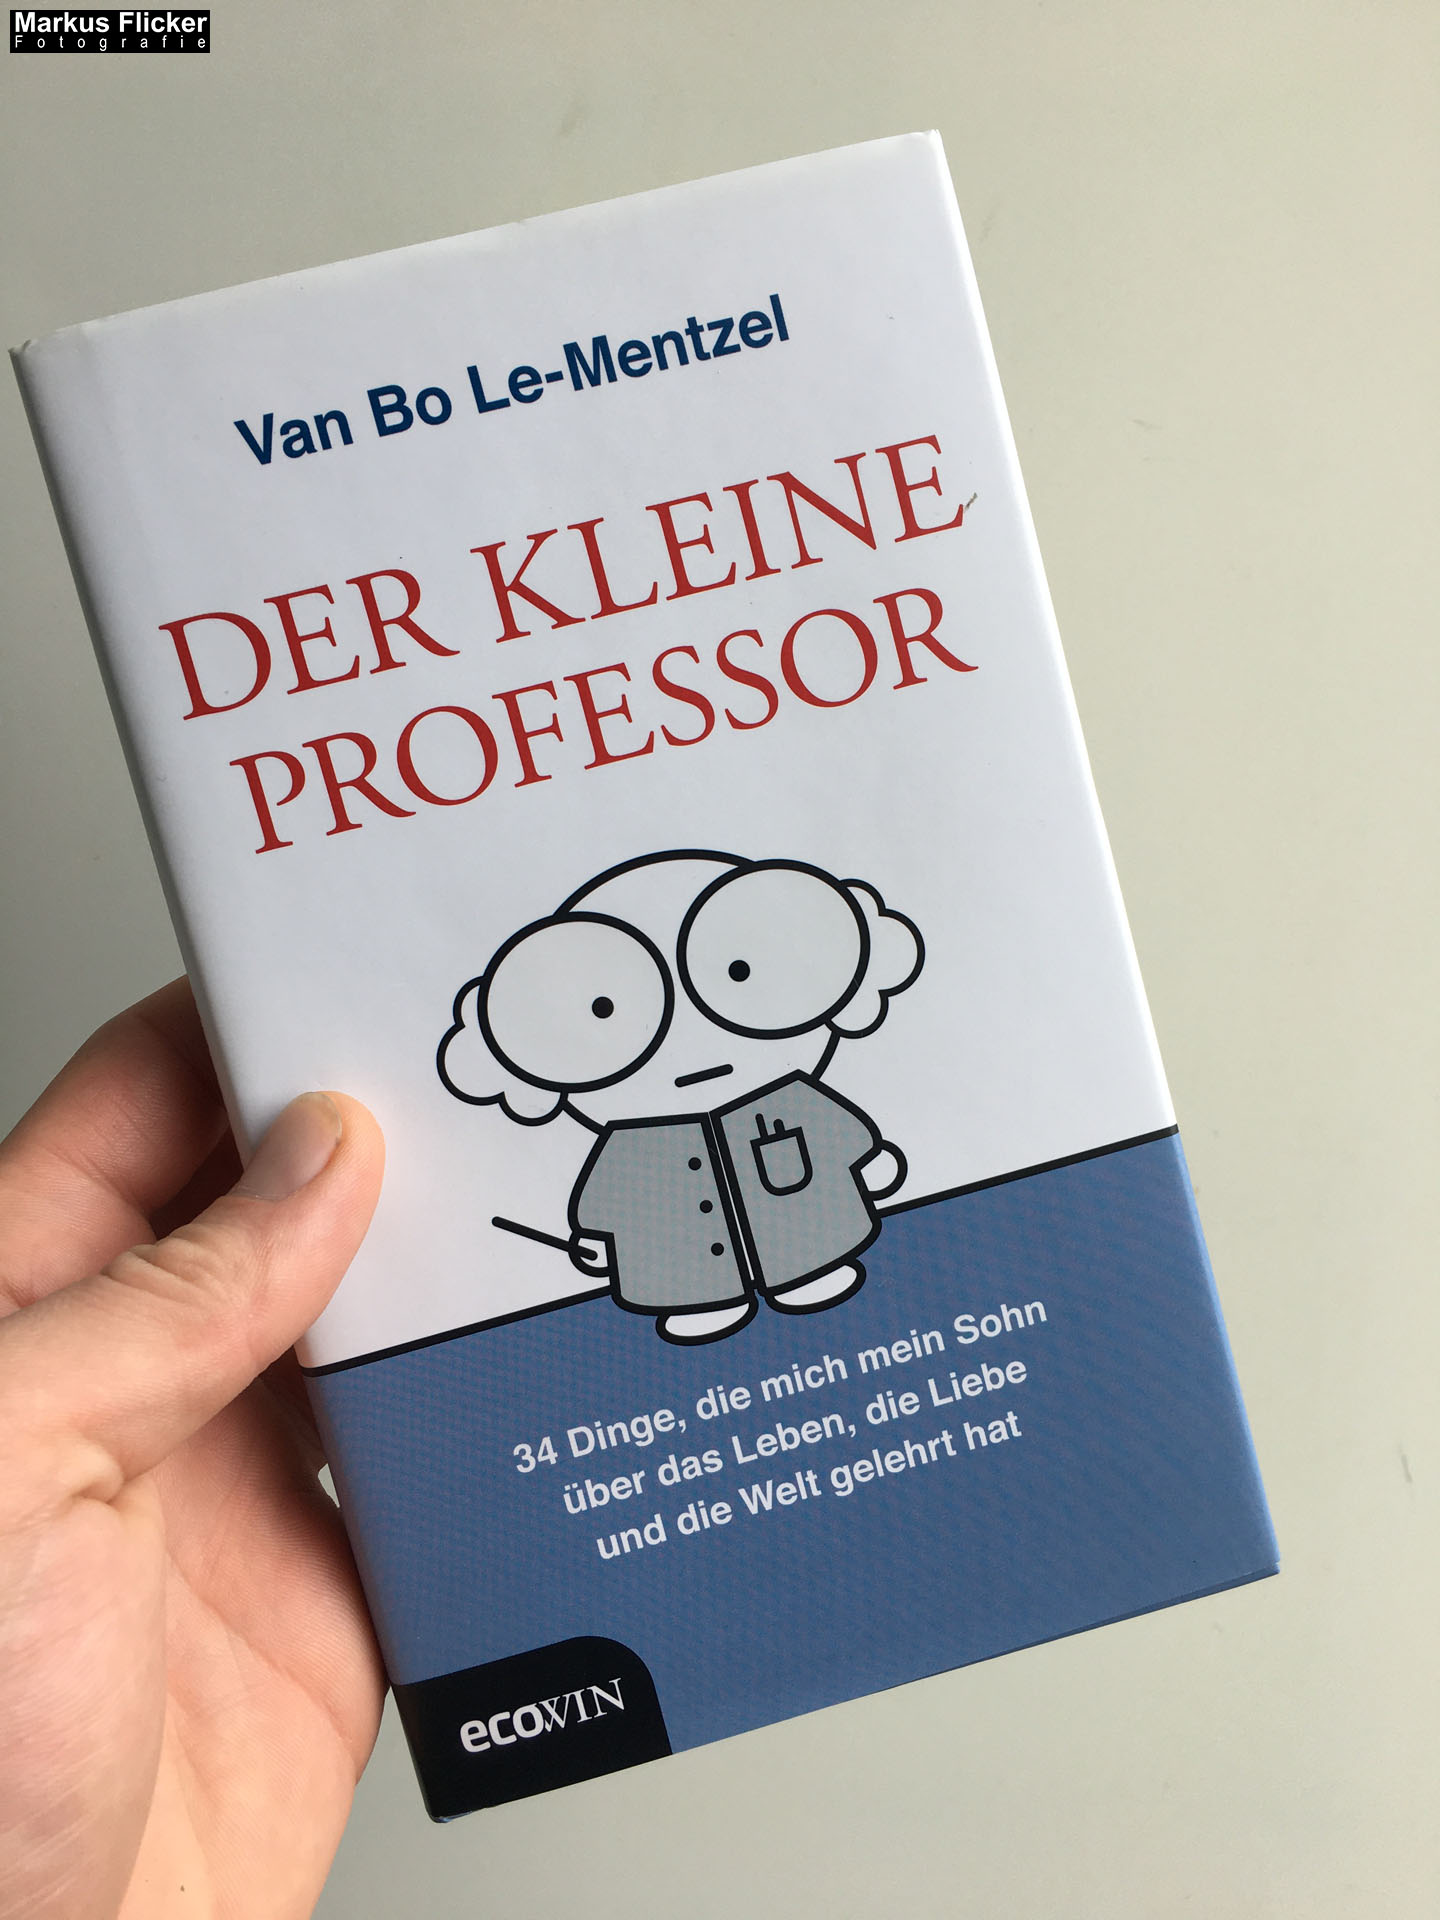 Der Kleine Professor: 34 Dinge, die mich mein Sohn über das Leben, die Liebe und die Welt gelehrt hat von Van Bo Le-Mentzel